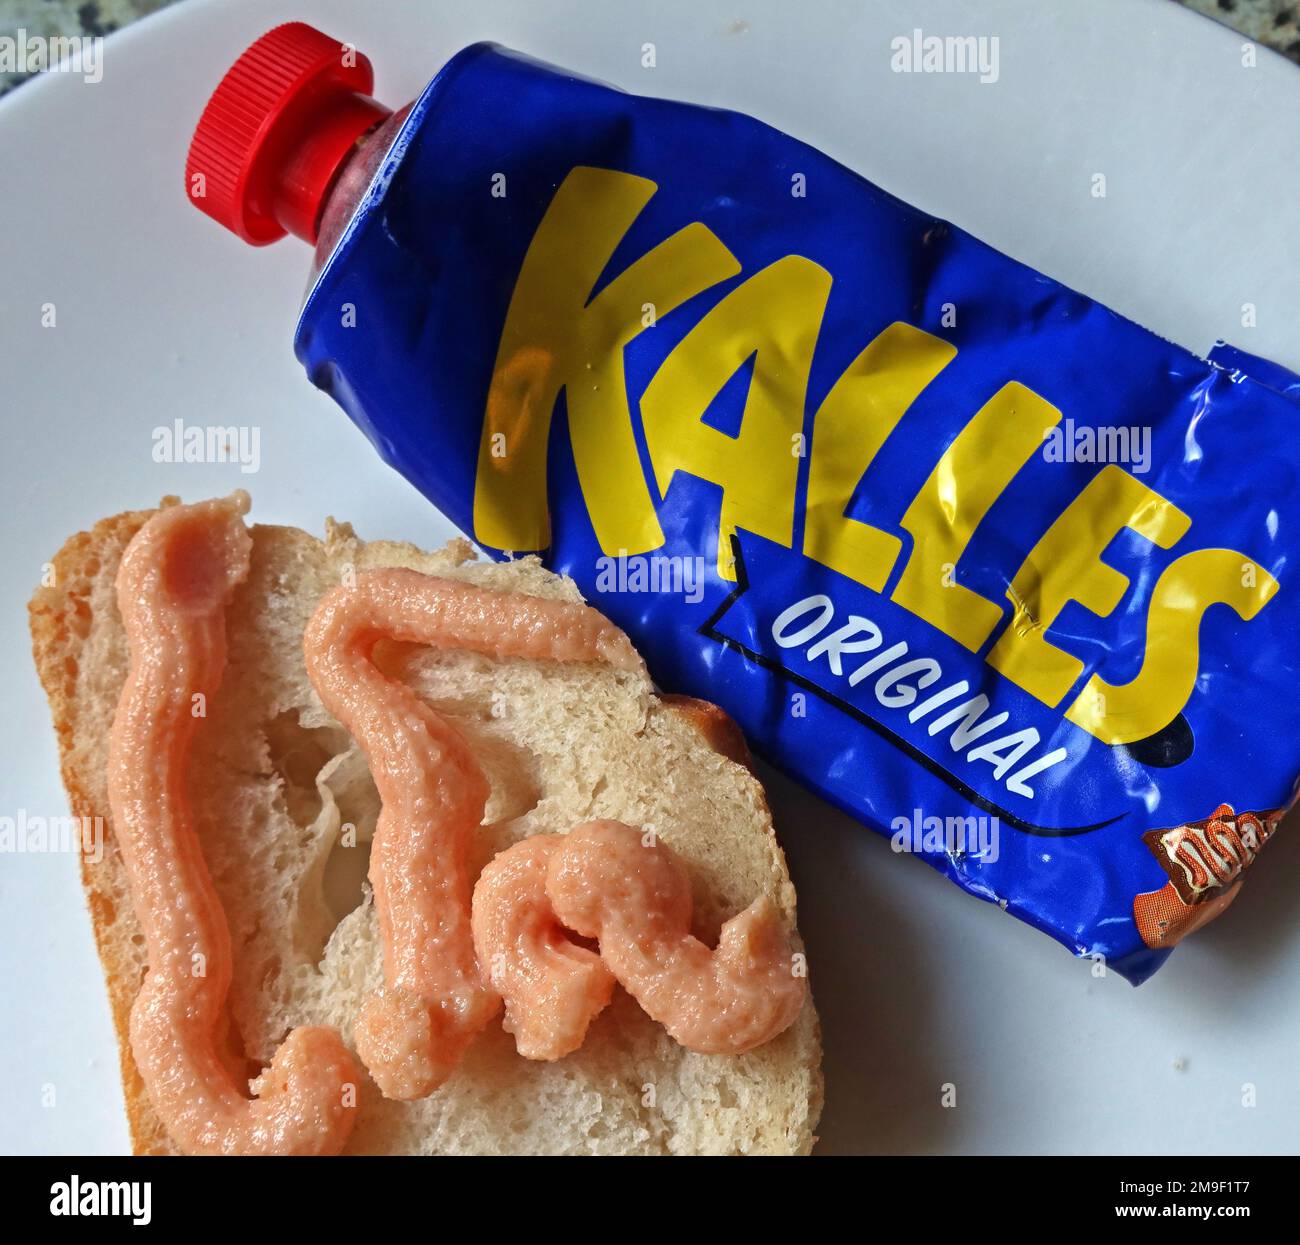 Tubetto blu di capra di merluzzo (gadus morhua), zucchero, olio di canola e spezie, spruzzato su pane fresco, Svedese IKEA Food Foto Stock